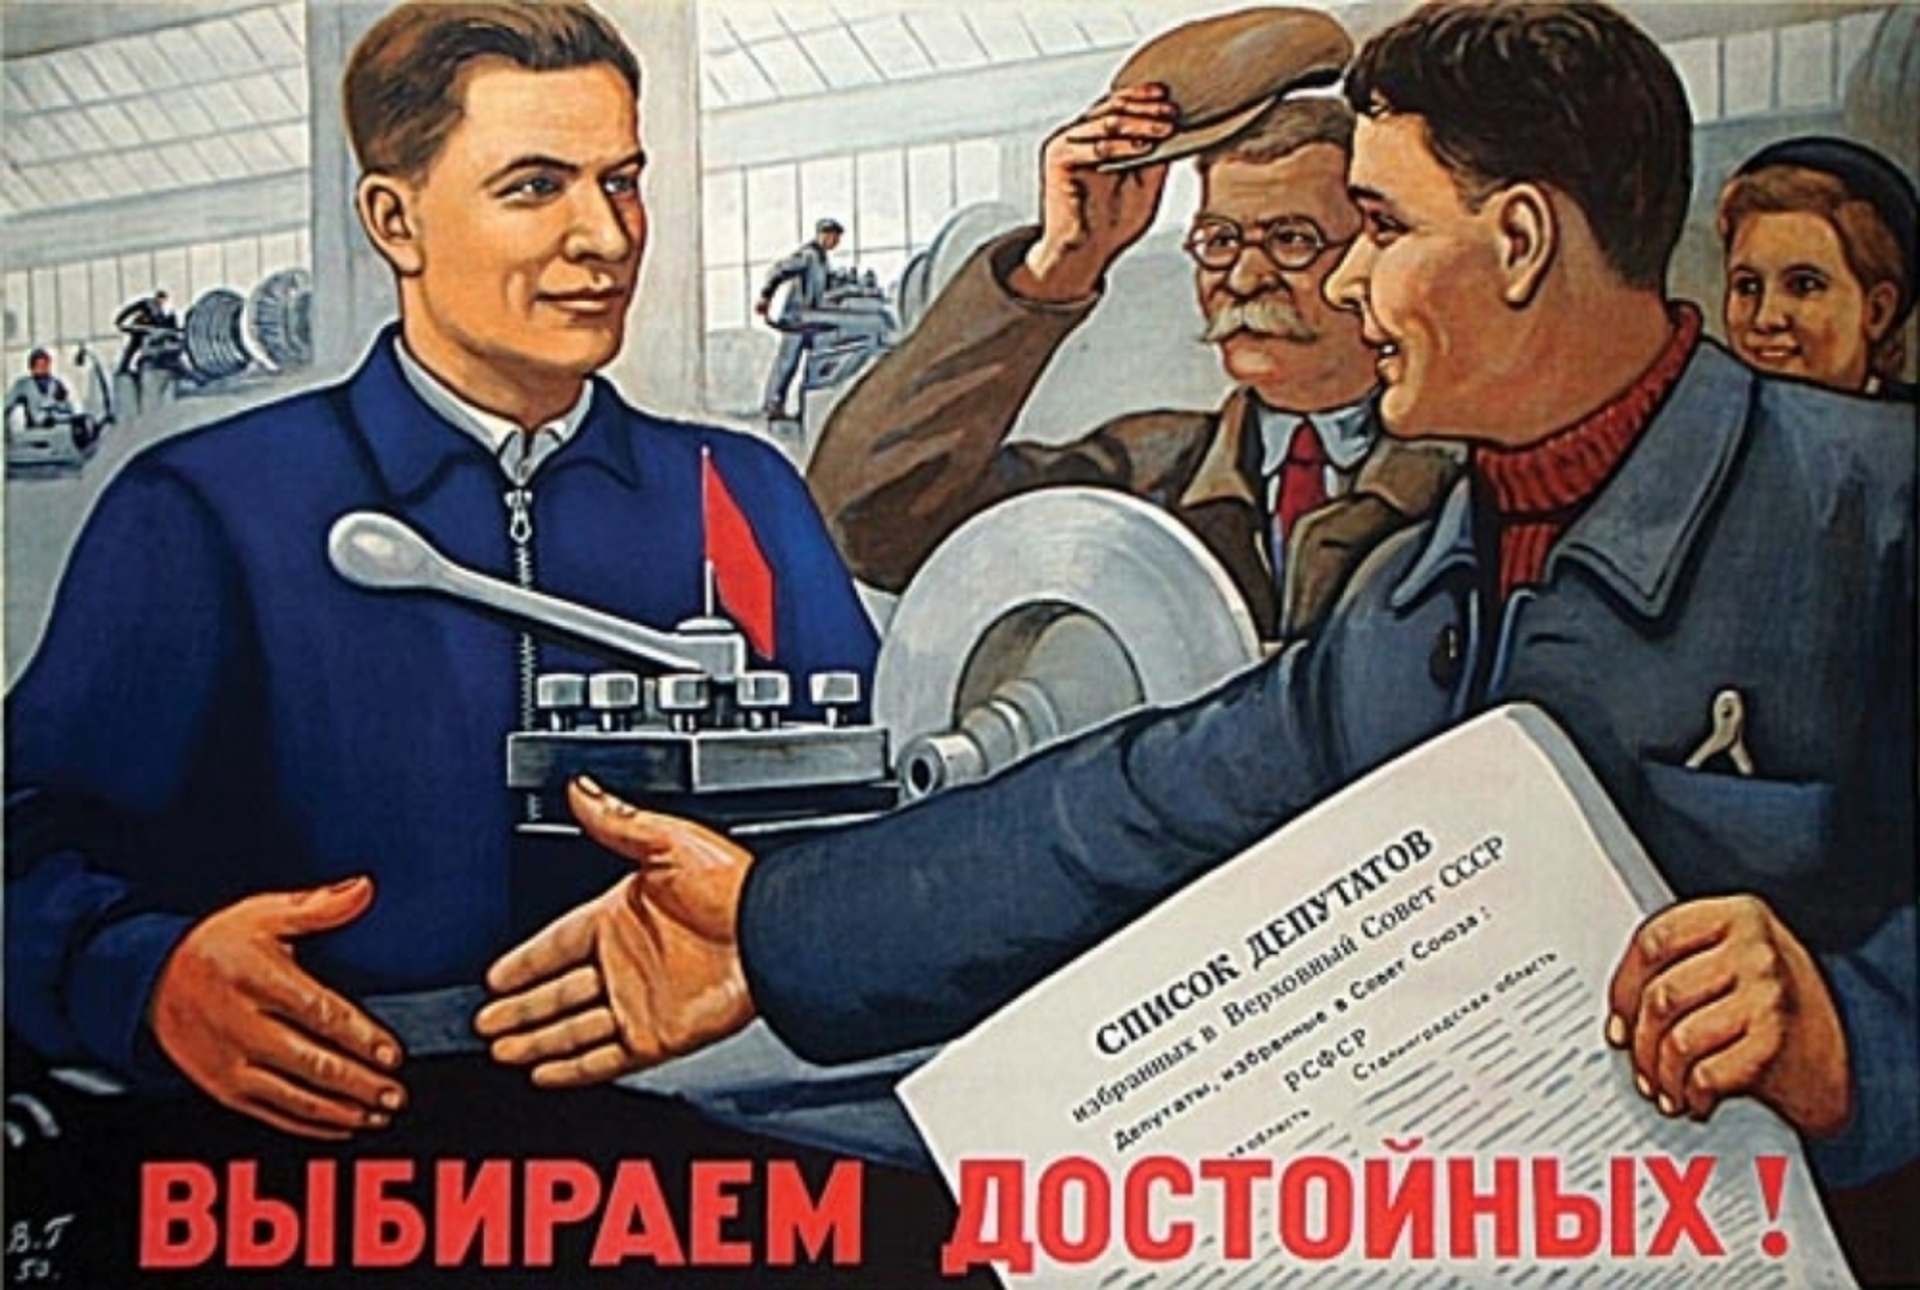 За сколько заканчивается агитация. Советские плакаты. Плакат депутата. Советские предвыборные плакаты. Плакат выберем достойных.